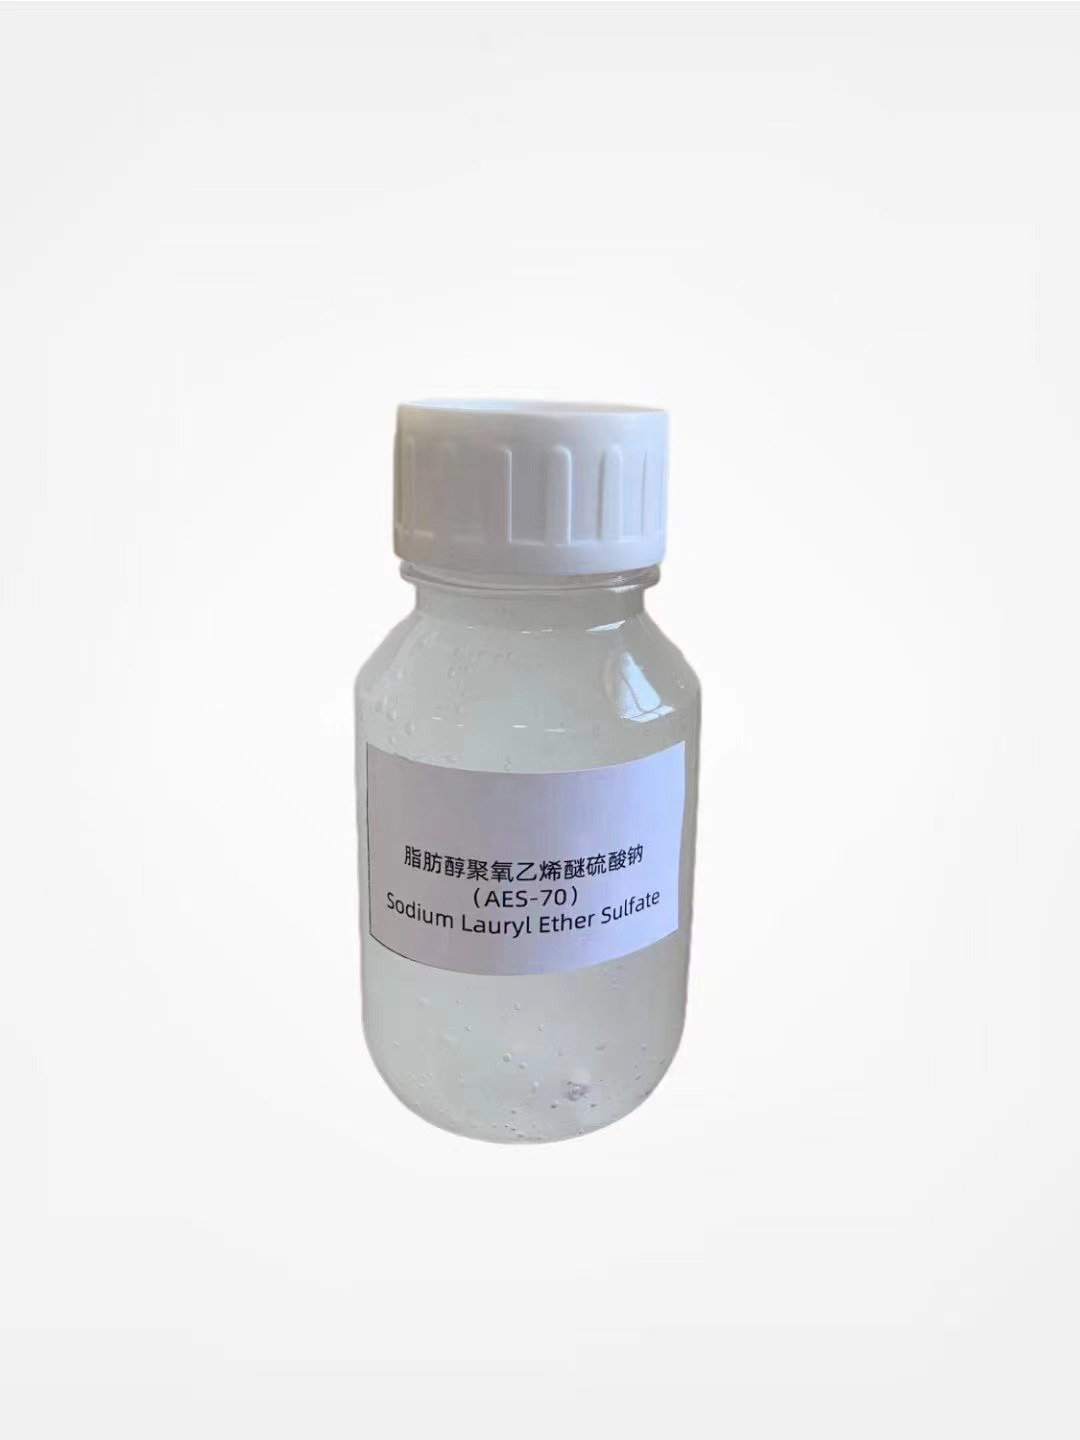 सोडियम Laurvl ईथर सल्फेट 70% (SLES 70%)